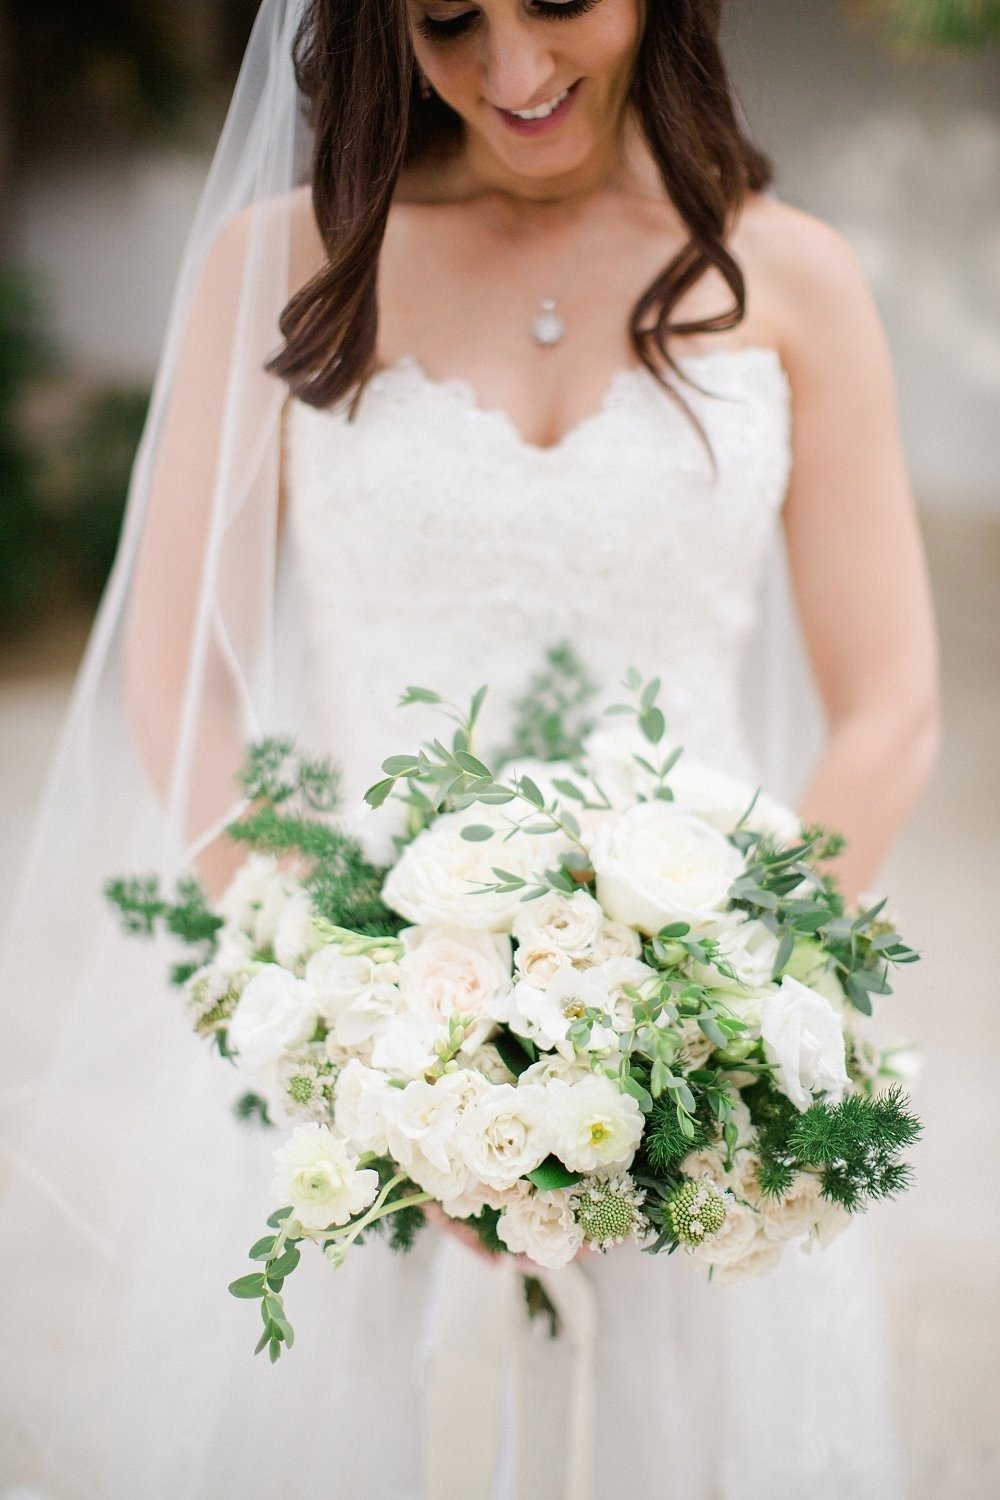 Pretty white wedding bouquet